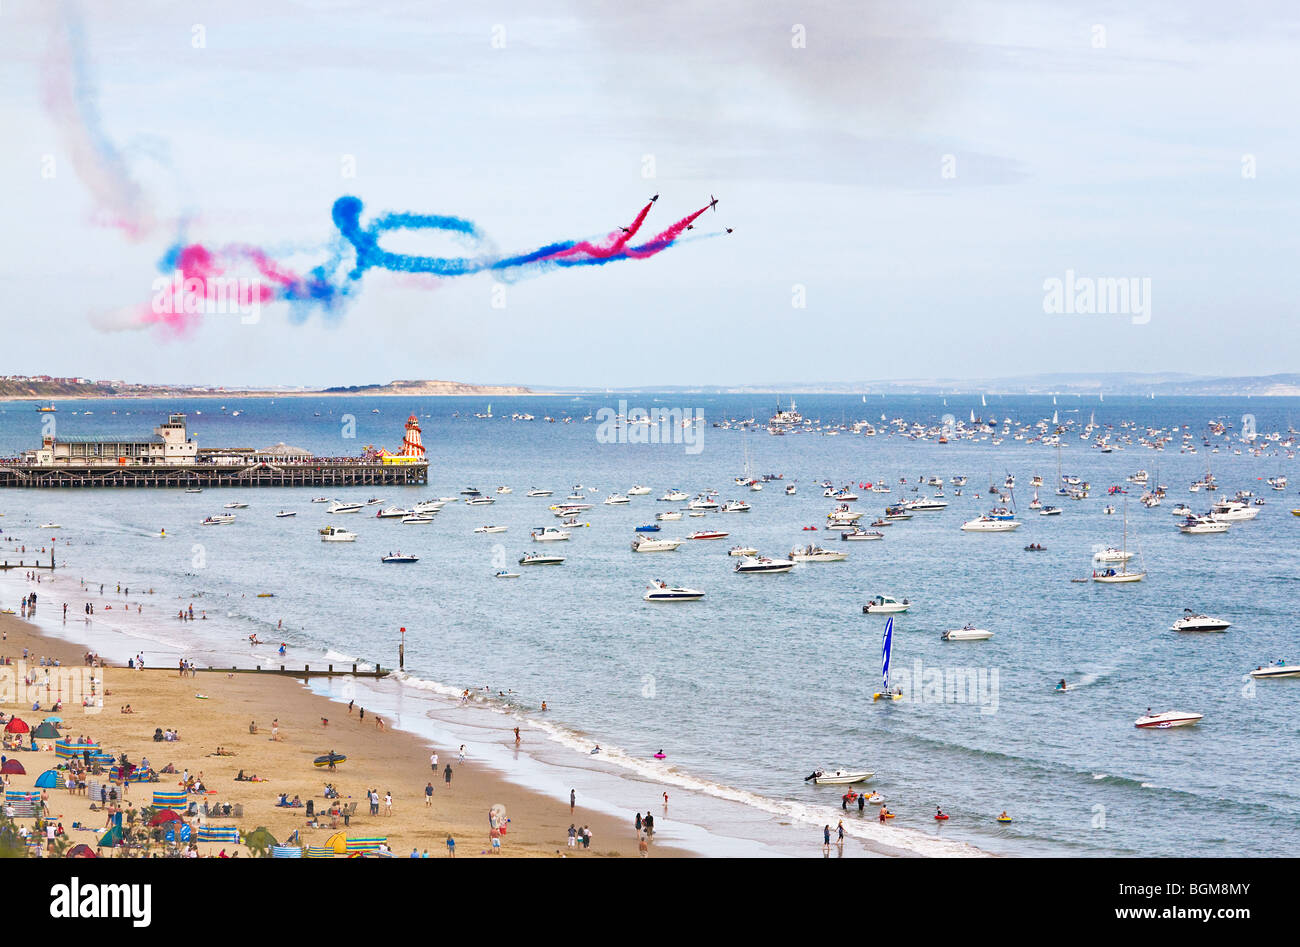 Les flèches rouges display team d'effectuer leur routine sur la jetée de Bournemouth le Festival de l'air. Le Dorset. UK. Banque D'Images